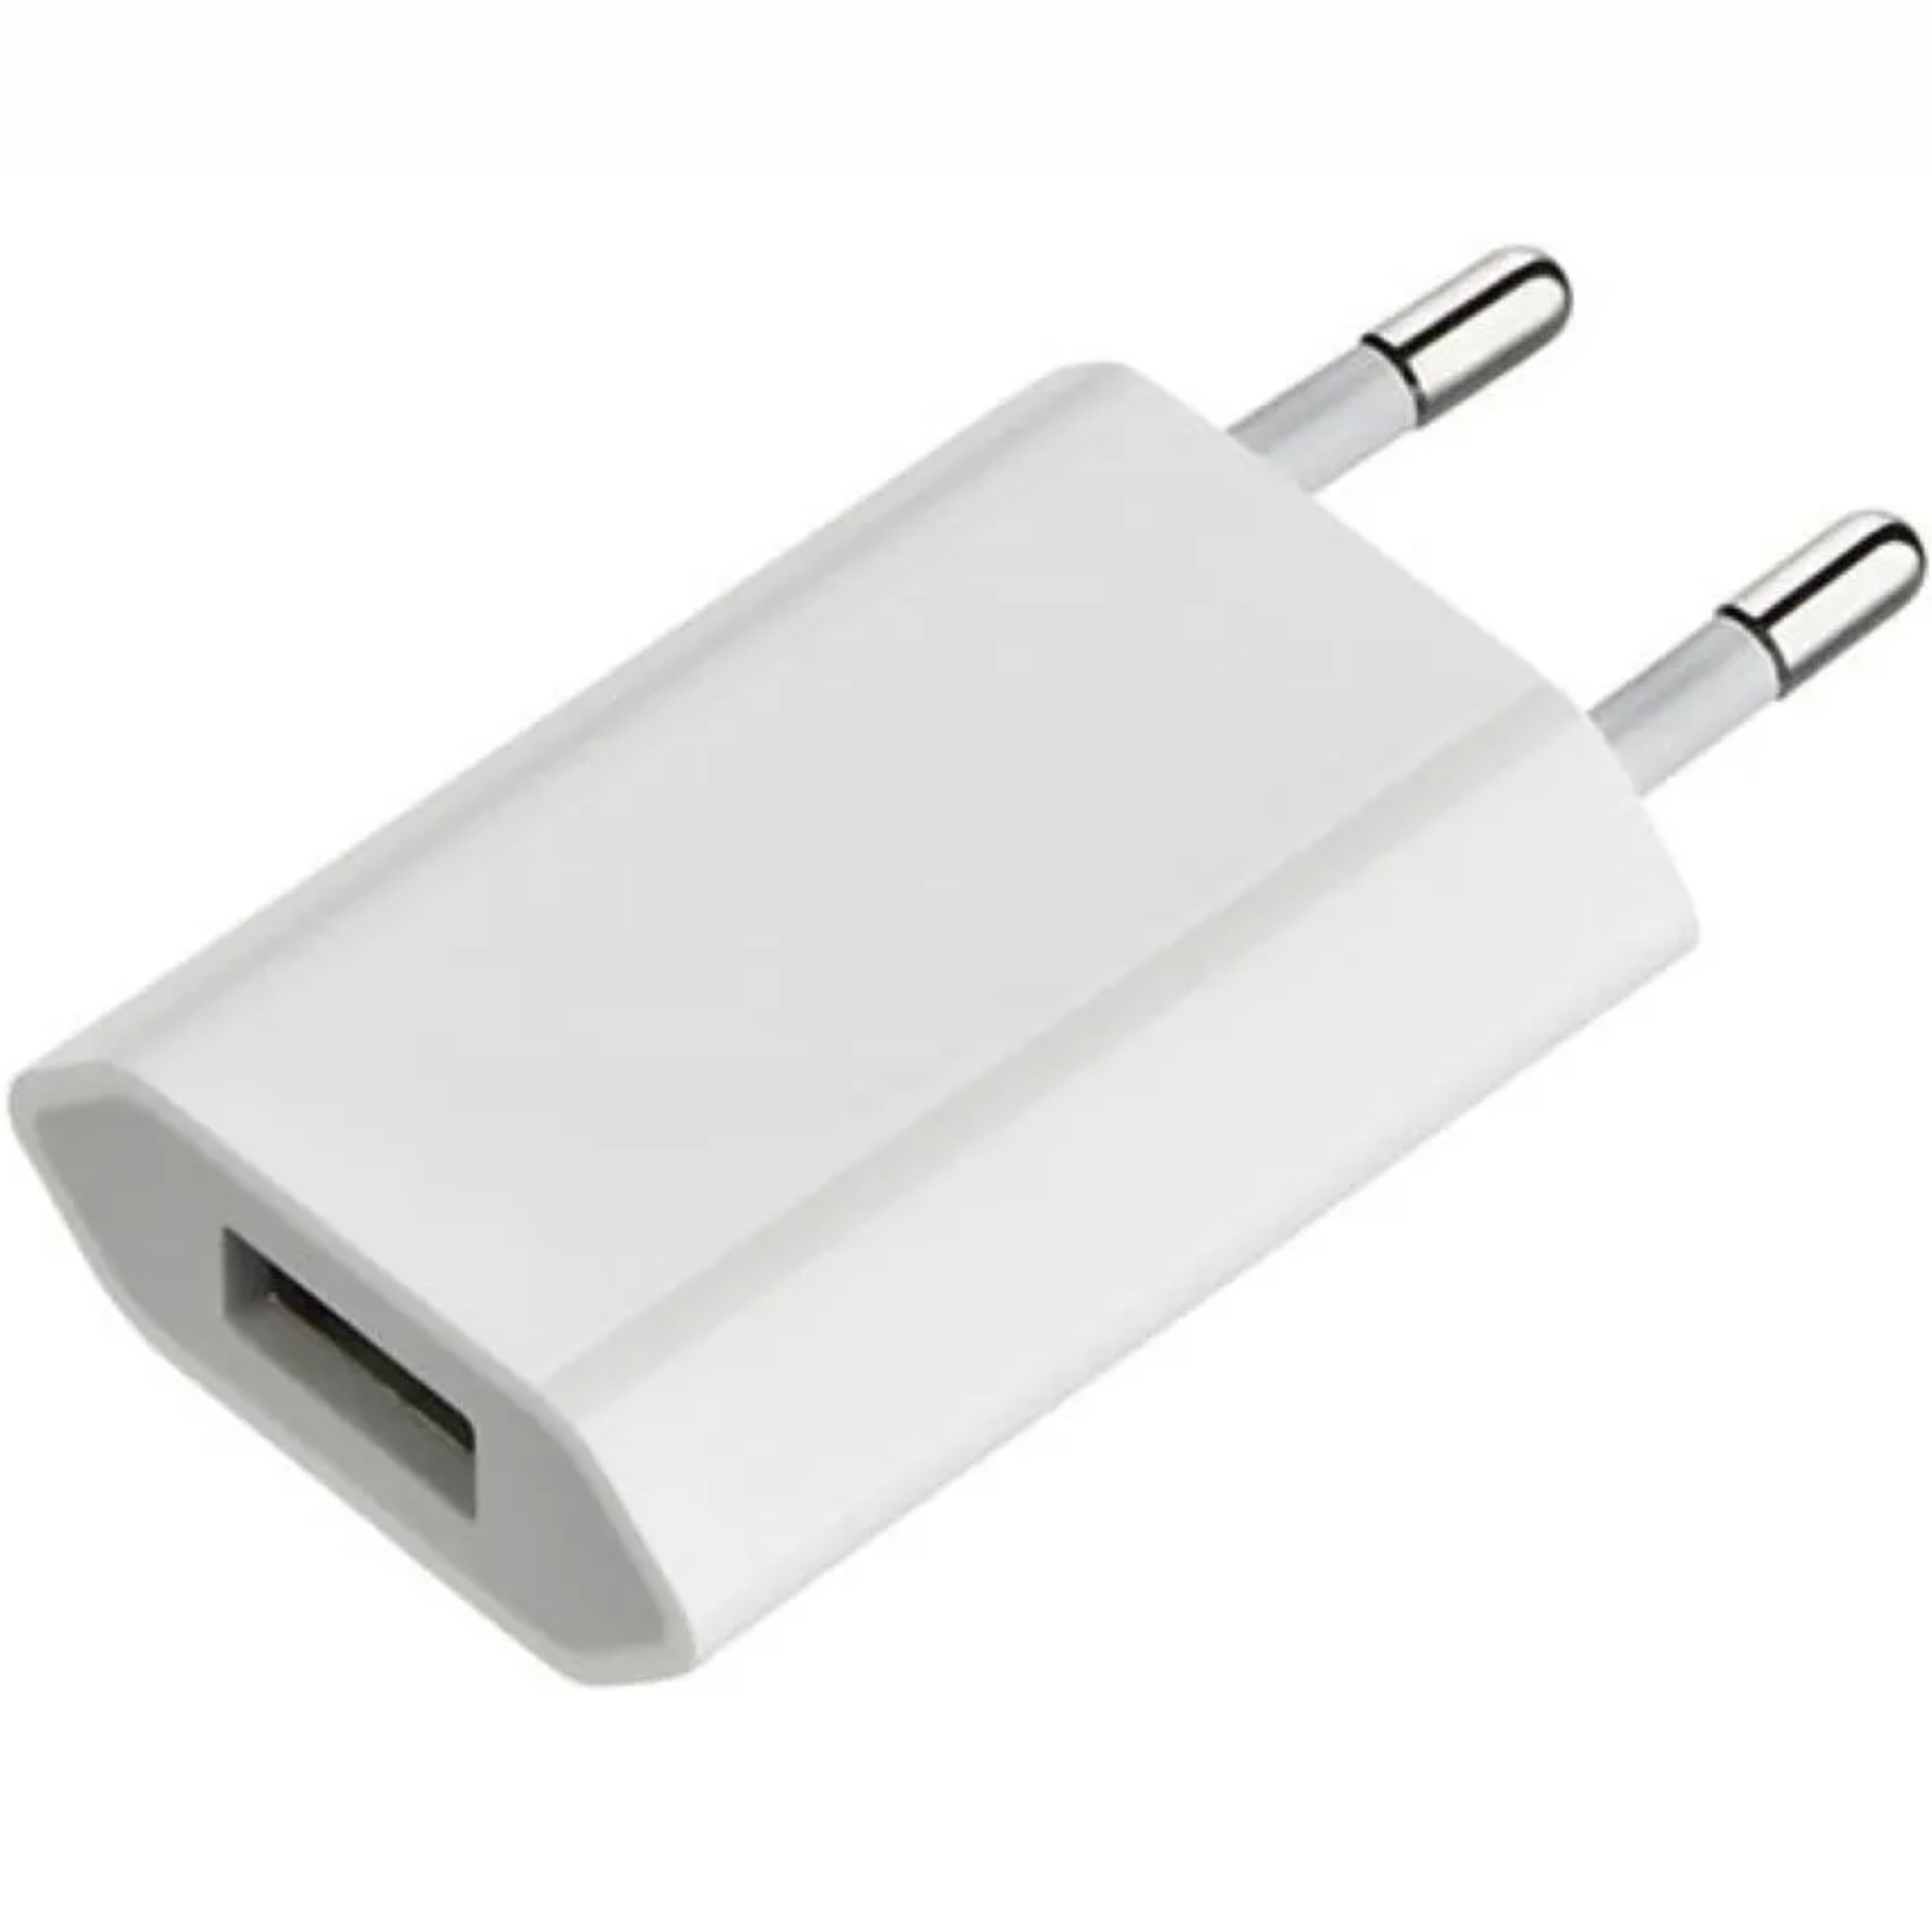 Сетевая зарядка Apple md813zm/a. Адаптер Apple md813zm/a, белый. Адаптер 5v 1a. Сетевое зарядное устройство Apple mgn13zm/a белый. Купить зарядку эпл